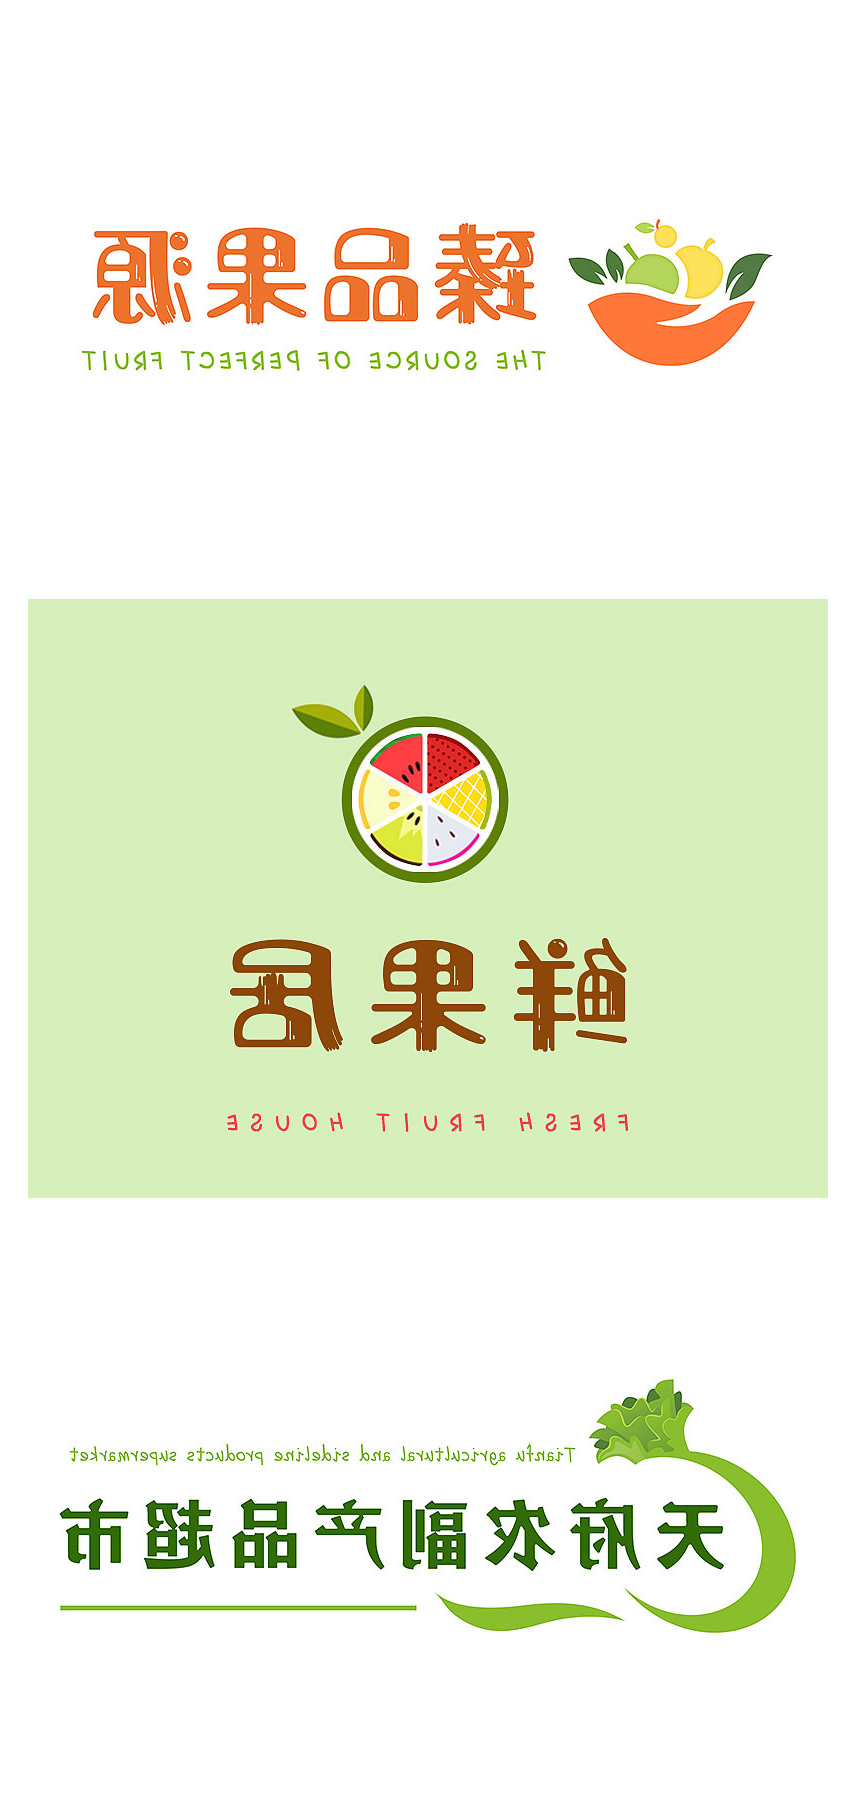 东莞多款水果超市标识设计分享